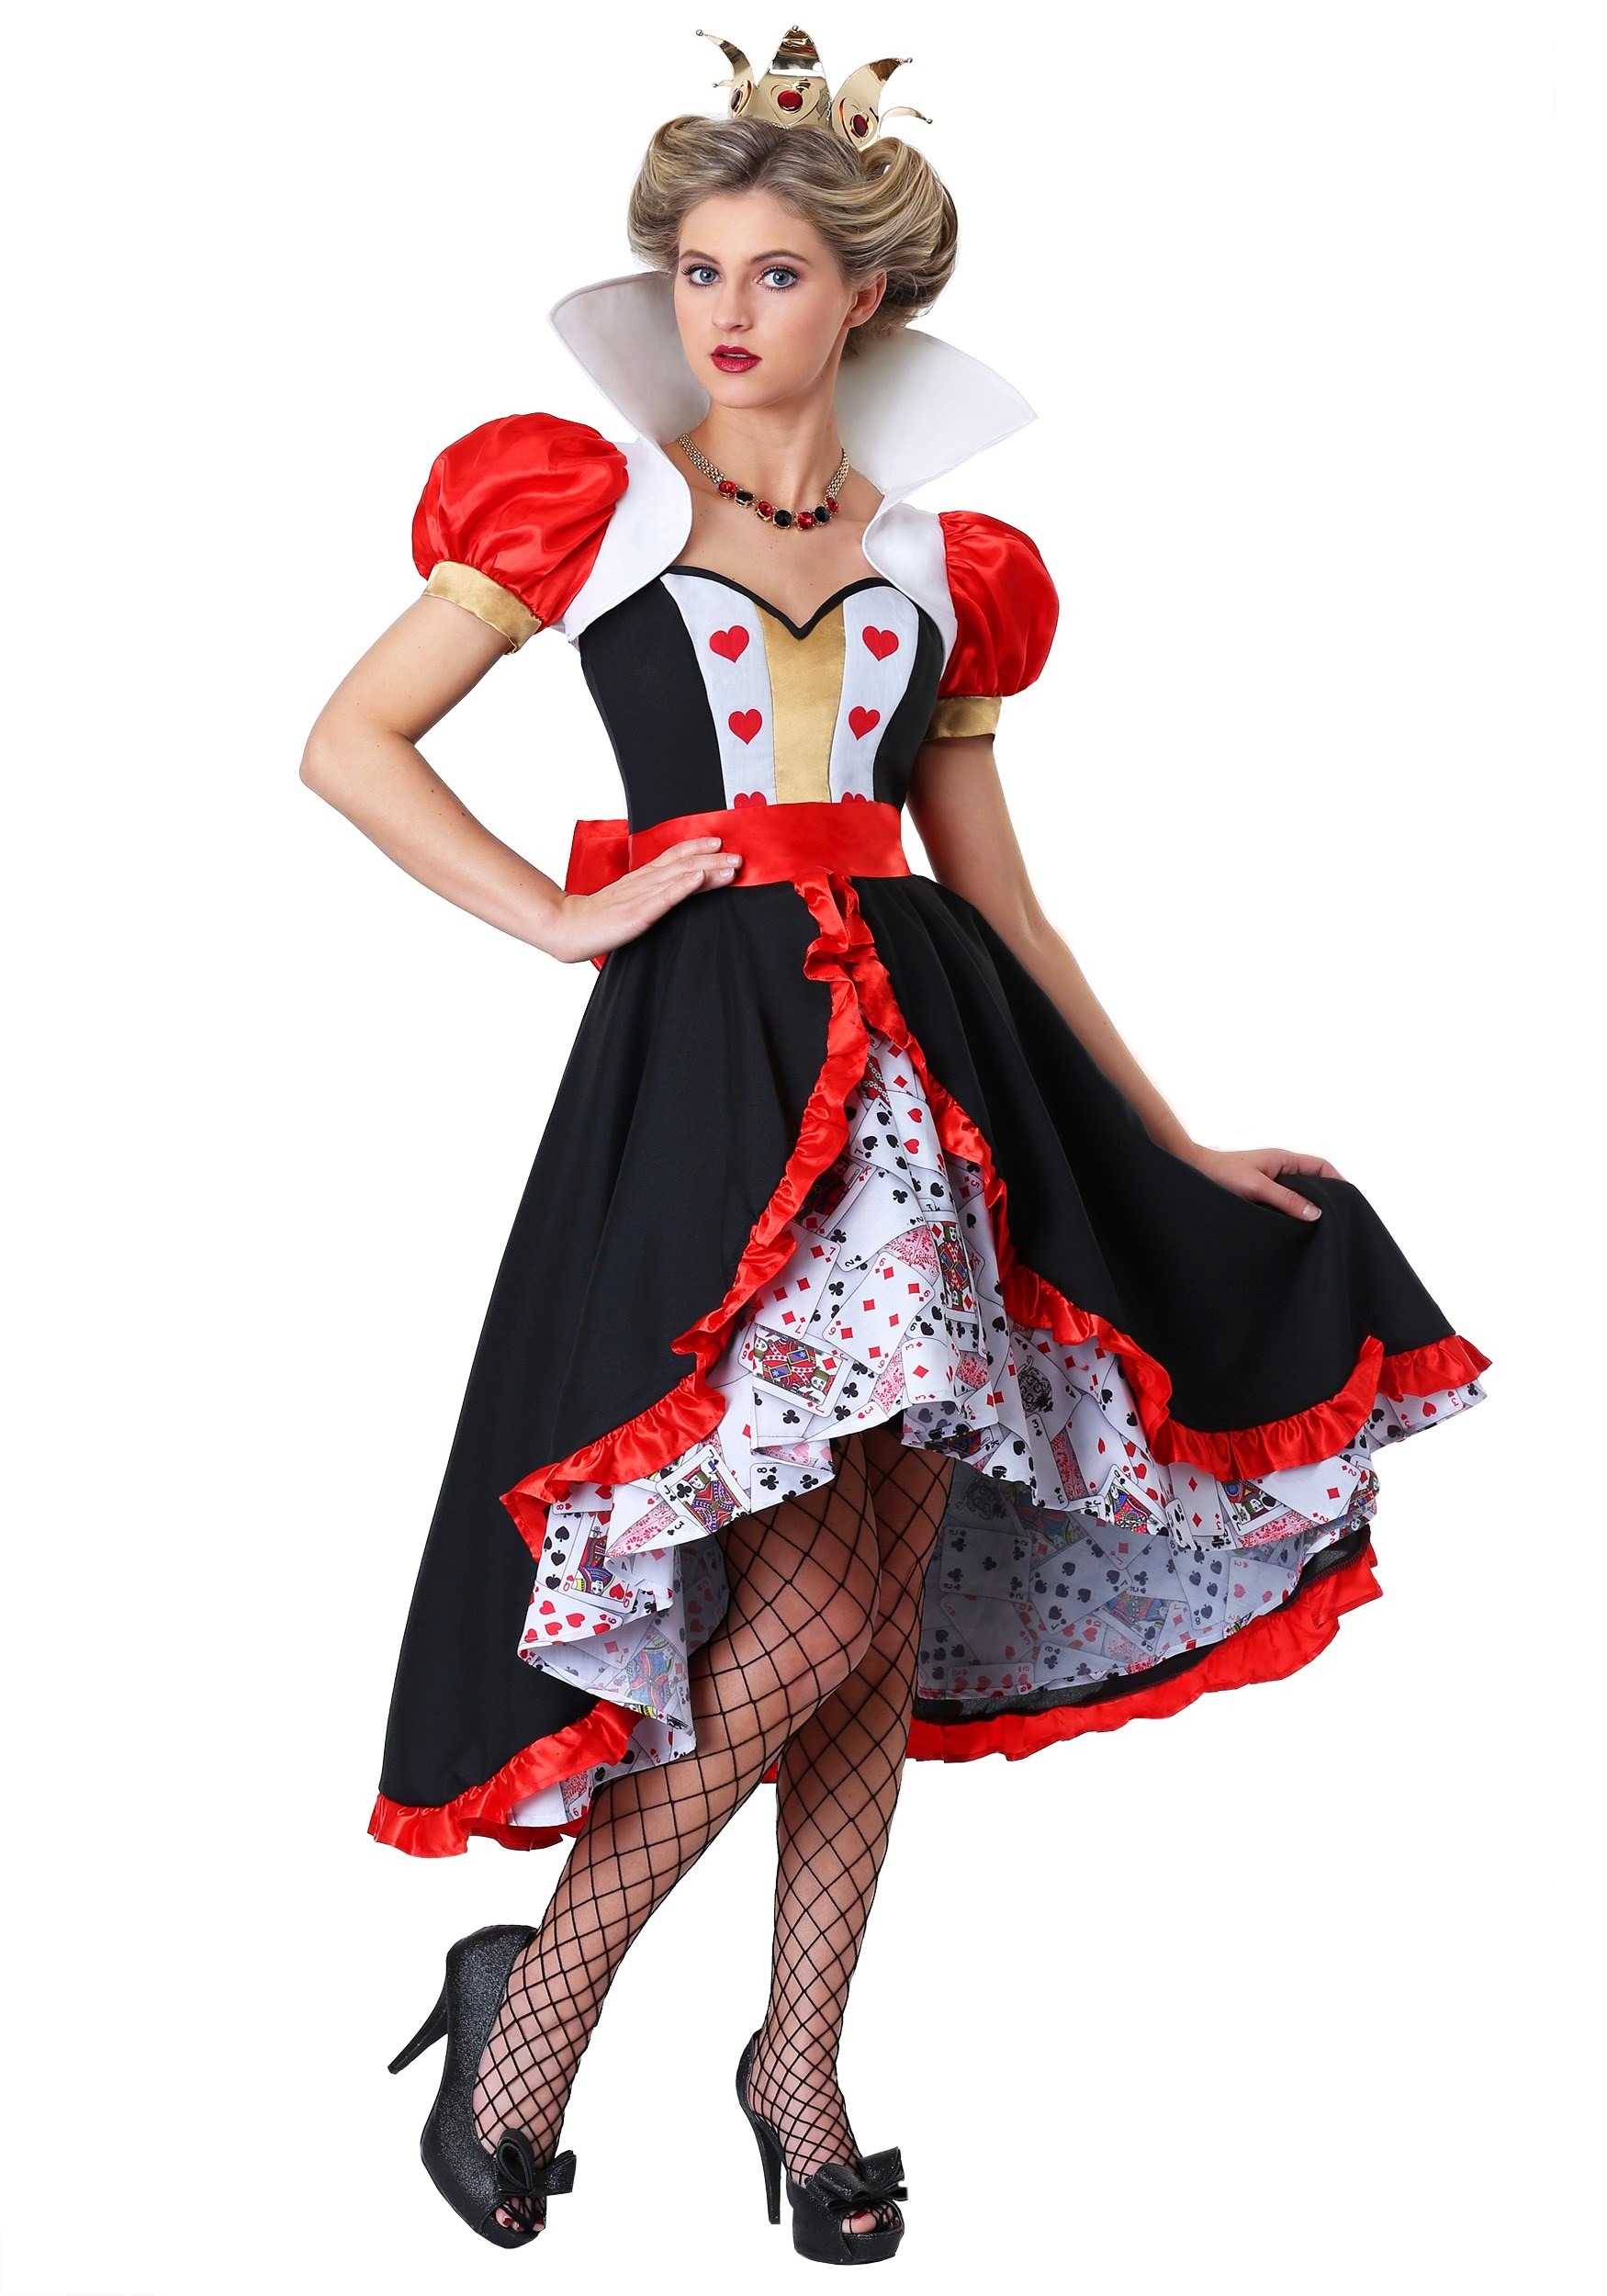 Queen Of Hearts (Red Queen) Cosplay Alice in Wonderland